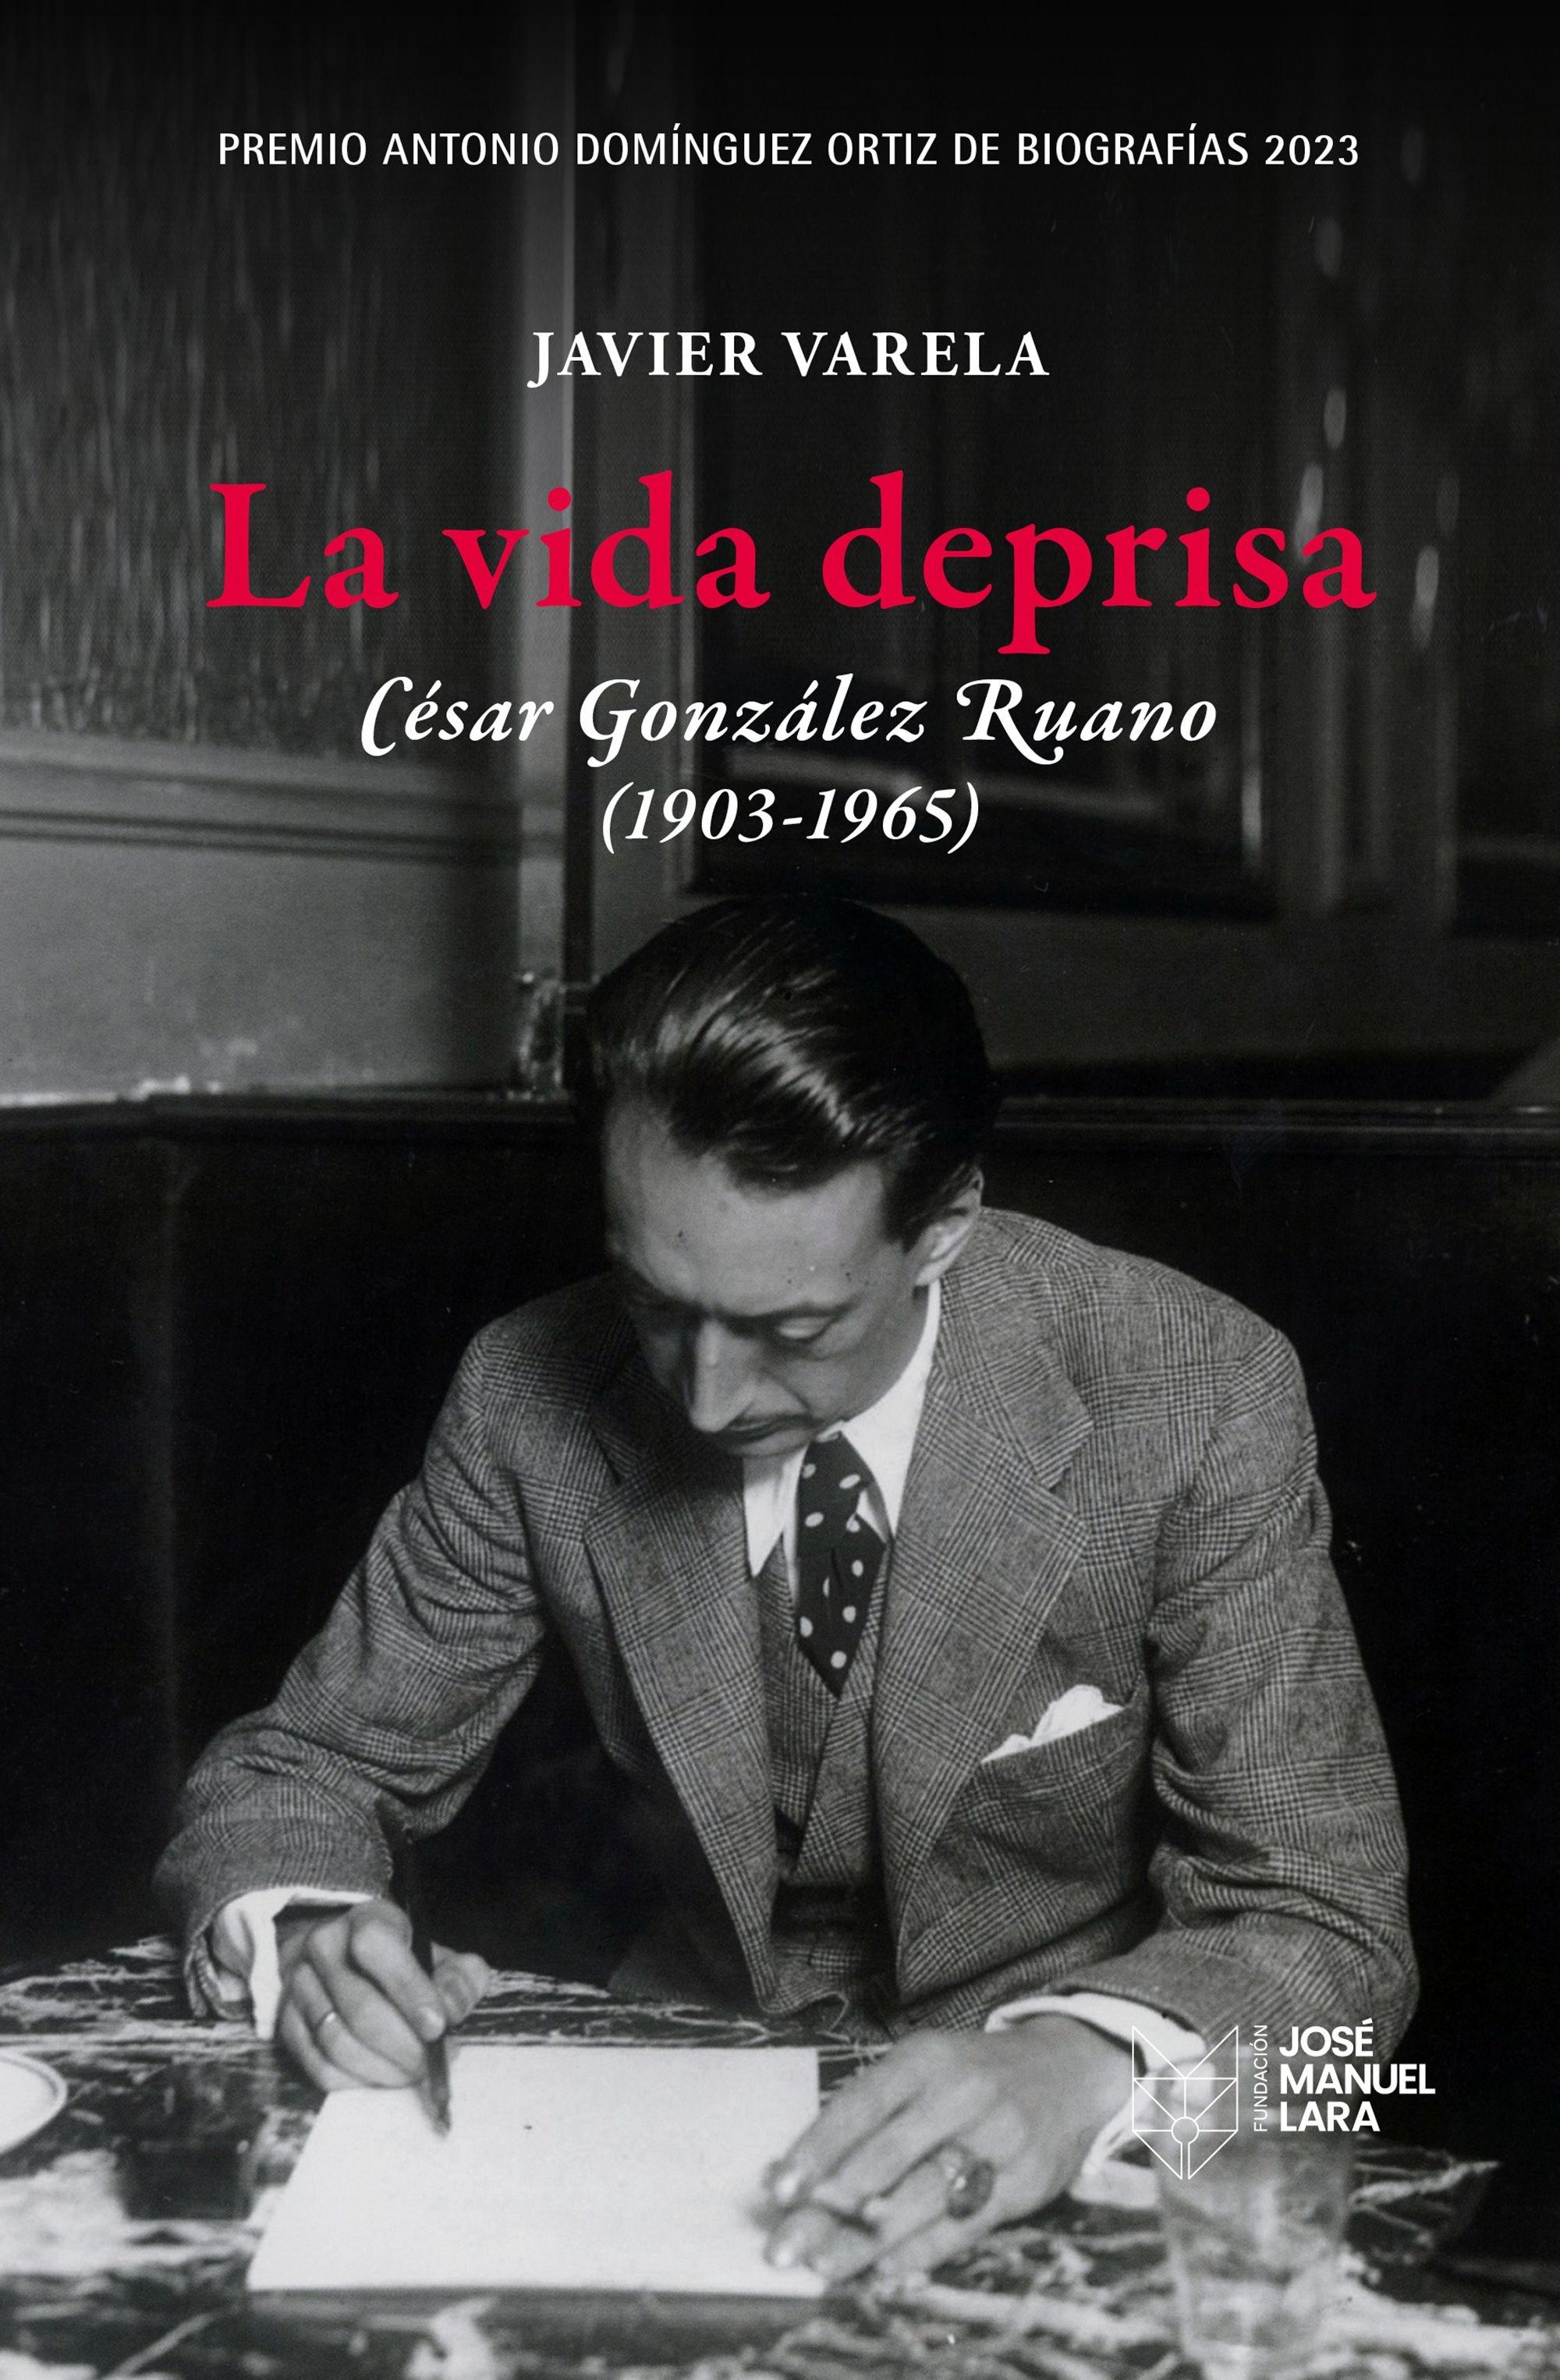 Vida deprisa. César González Ruano (1903-1965), La "Premio Antonio Domínguez Ortiz de Biografías 2023"